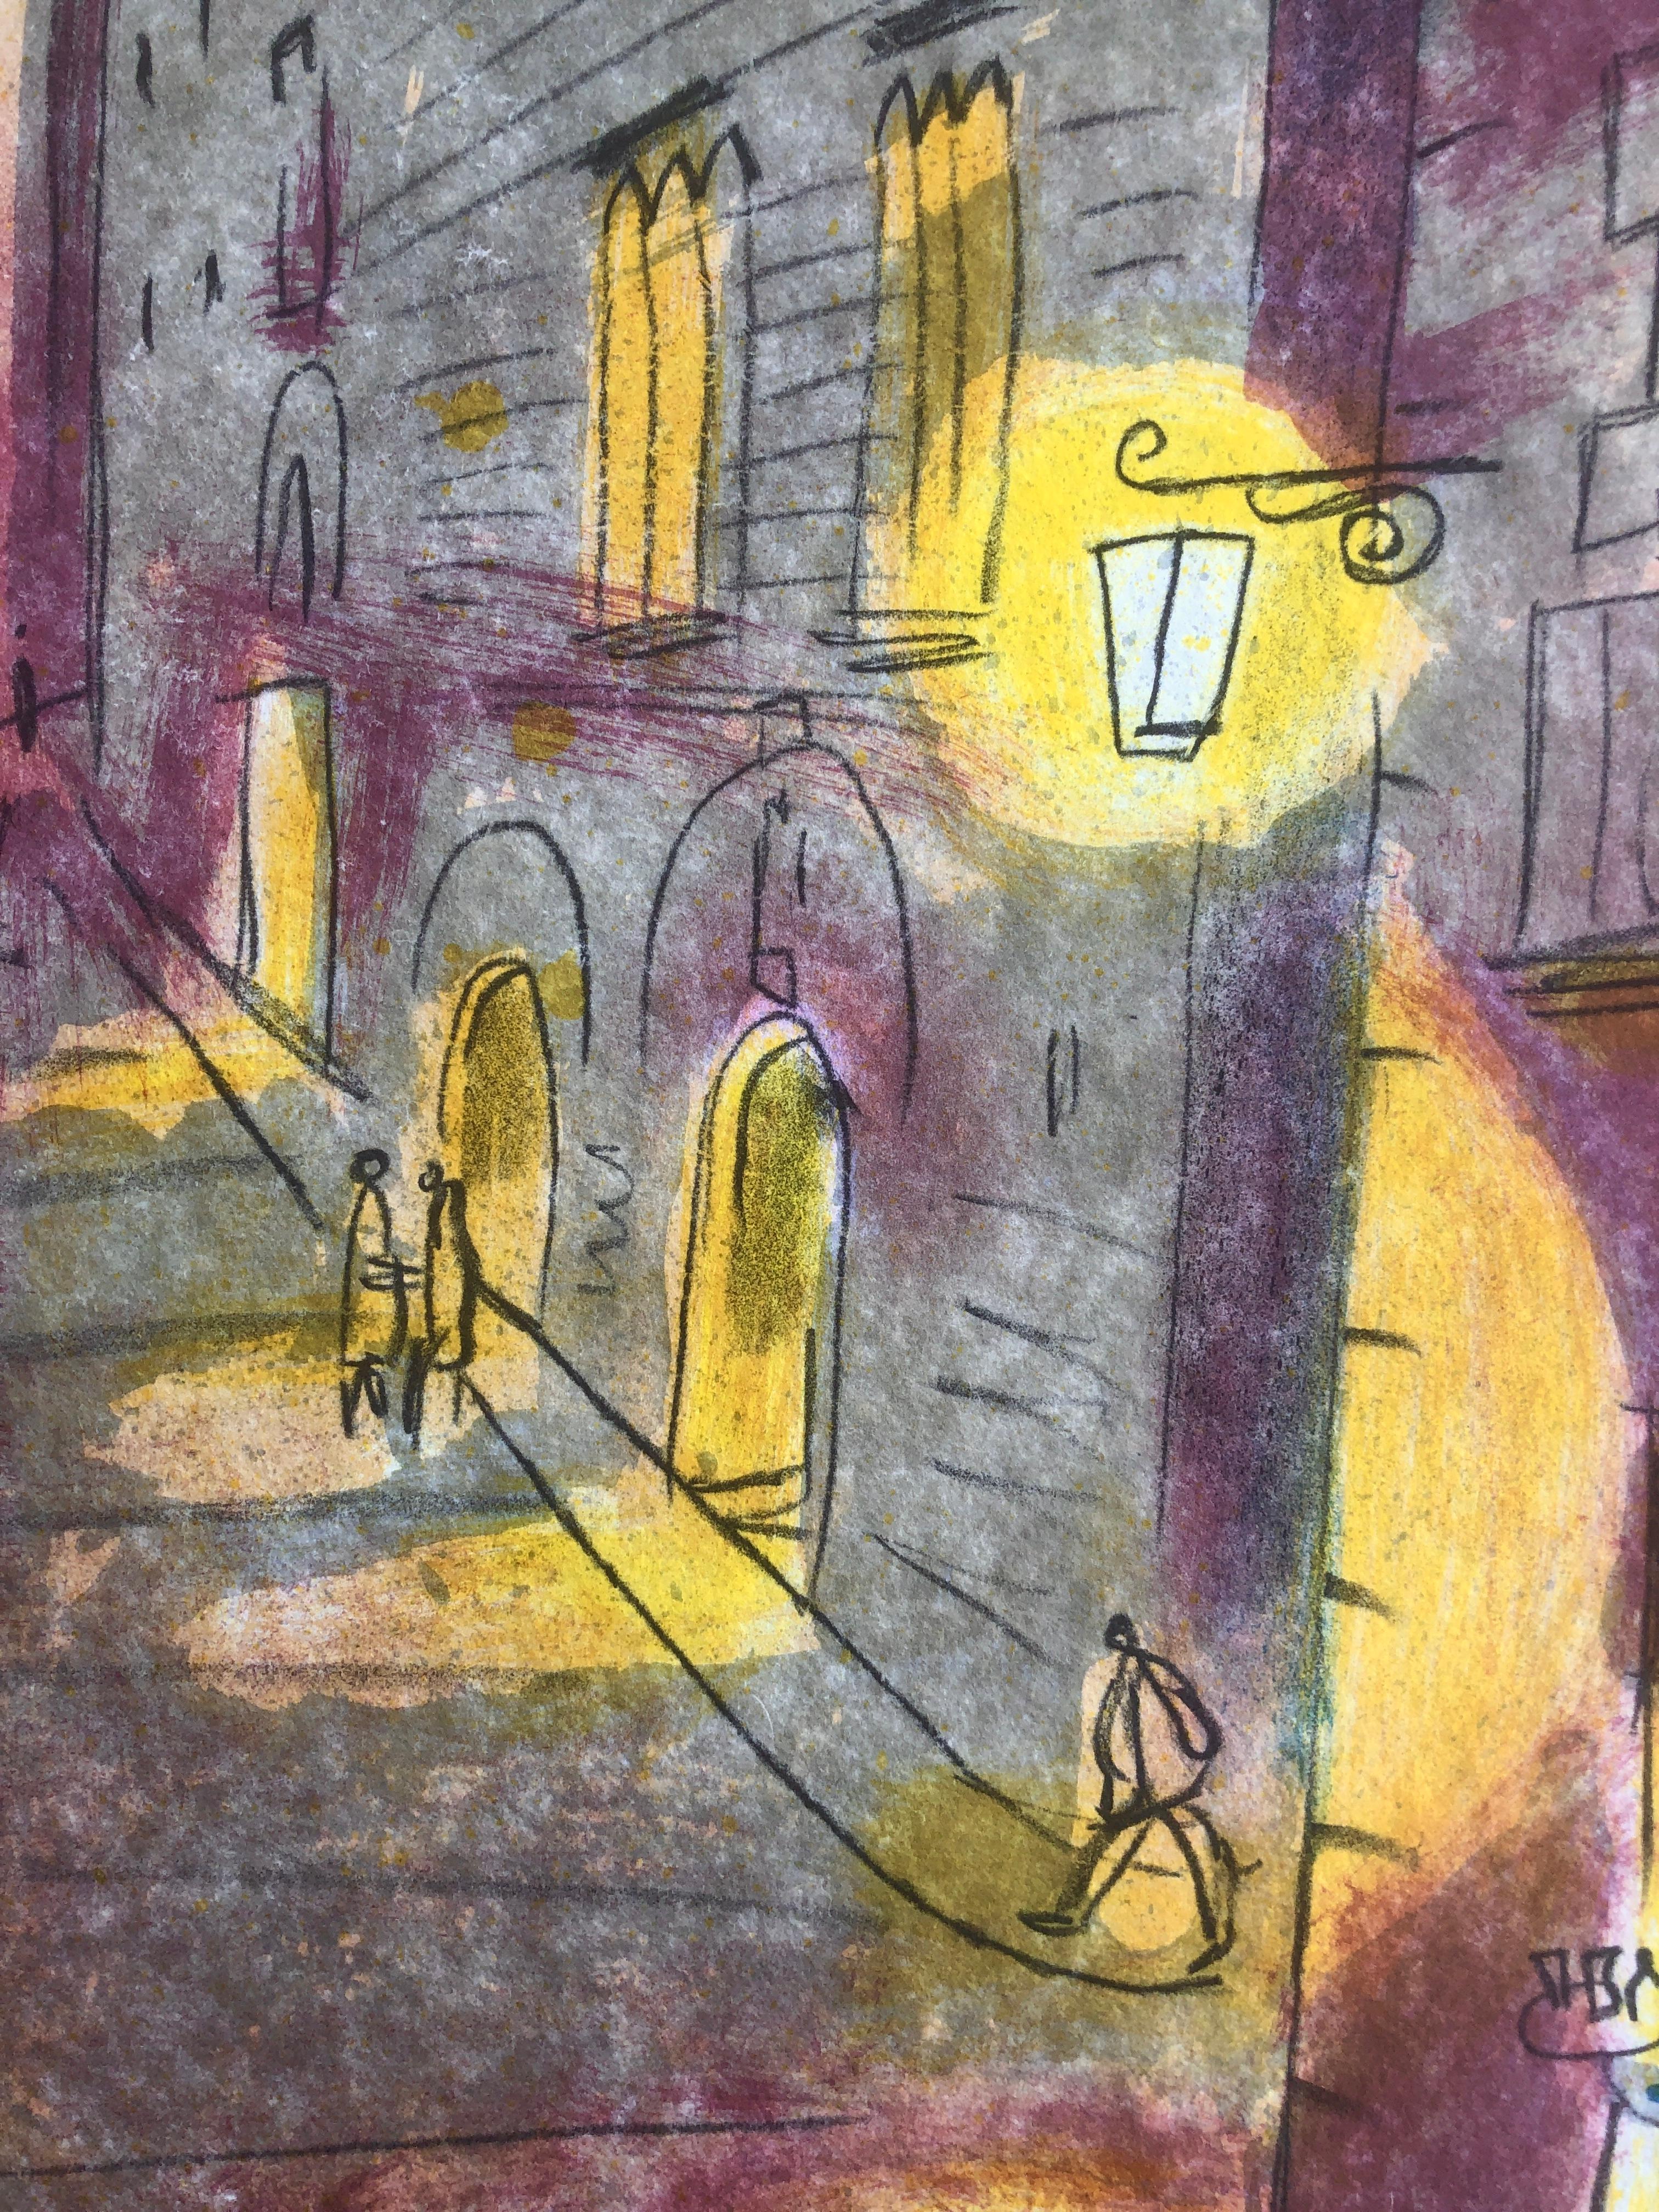 Josep Moscardó (1953) - Cathédrale de Gérone
Lithographie - Signée à la main

La lithographie mesure 74x52 cm.
Sans cadre.
Numéroté 121/150

Barcelone, 1953
Peintre, sculpteur et dessinateur de tradition post-impressionniste profondément enracinée